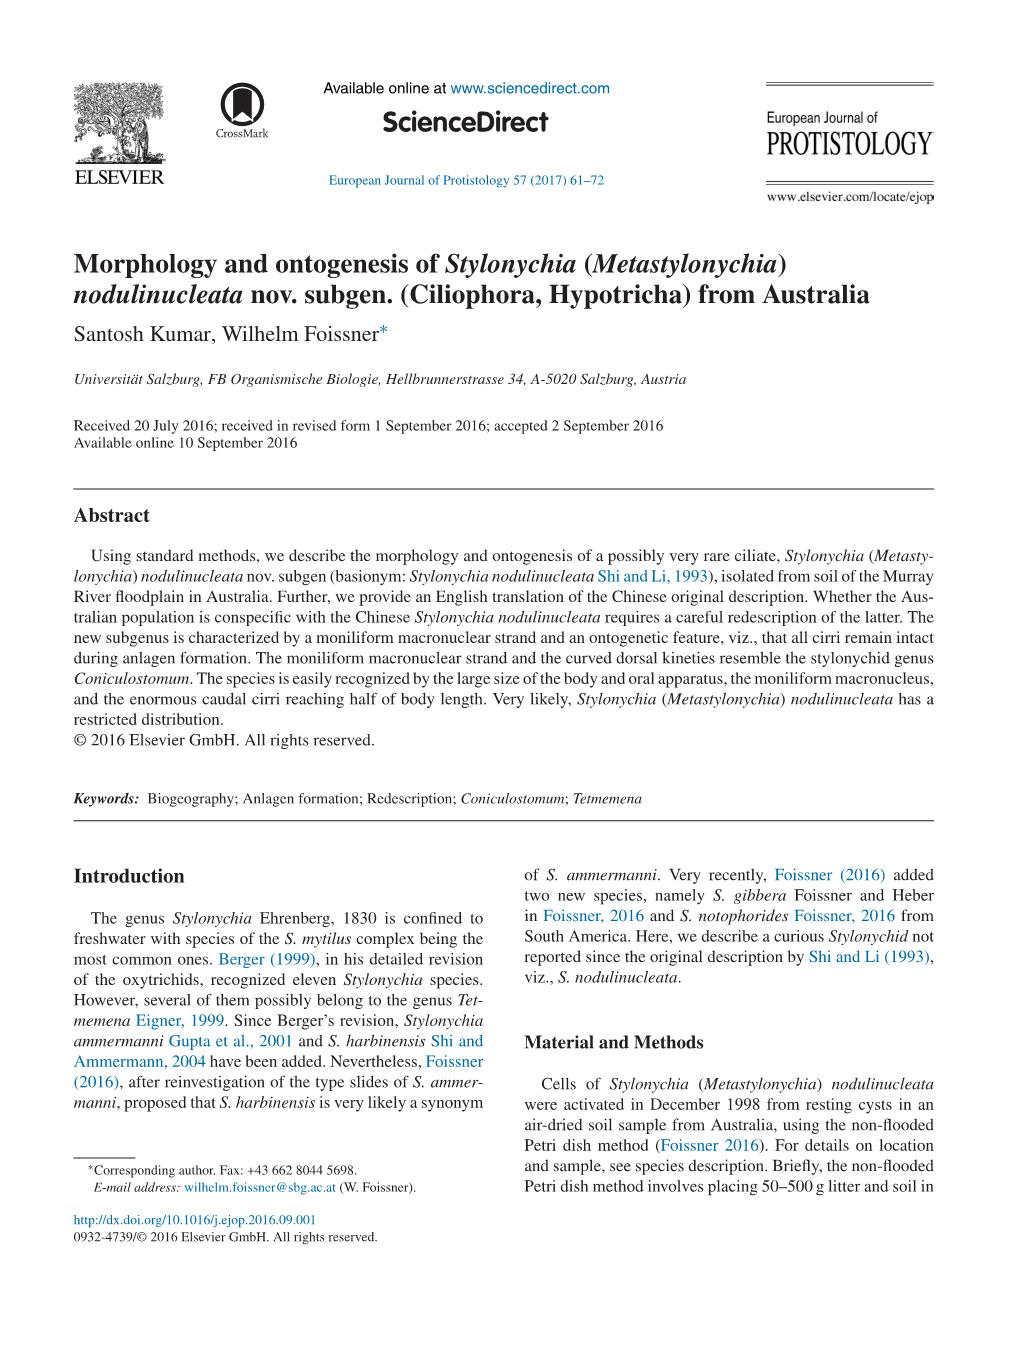 Morphology and Ontogenesis of Stylonychia (Metastylonychia)